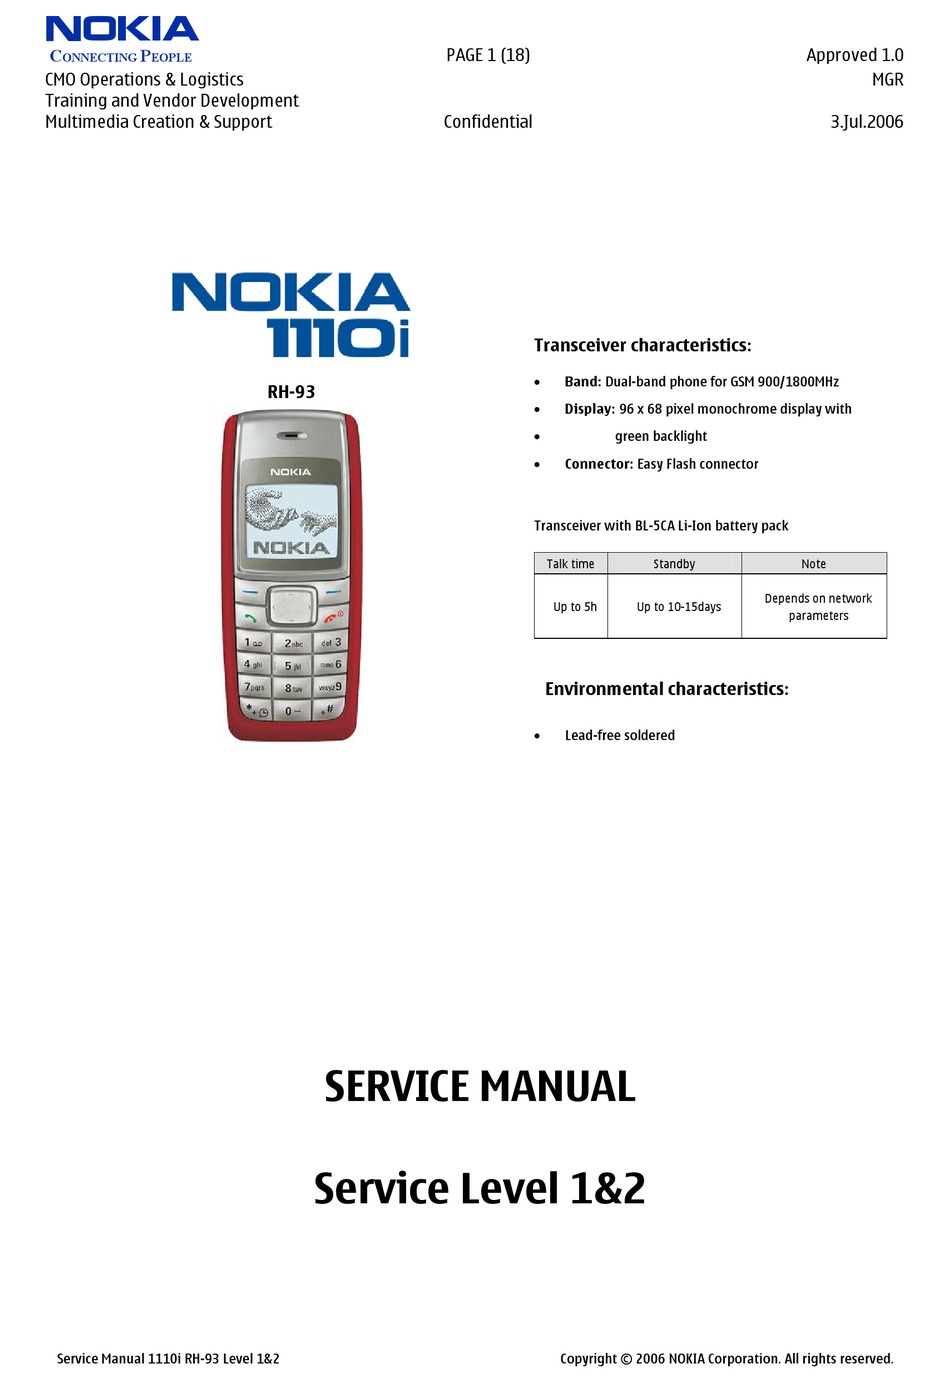 Телефоны нокиа инструкция. Нокиа 1110i характеристики. Nokia 1112 service manual. Нокиа 1110 схема. Nokia rh-93.